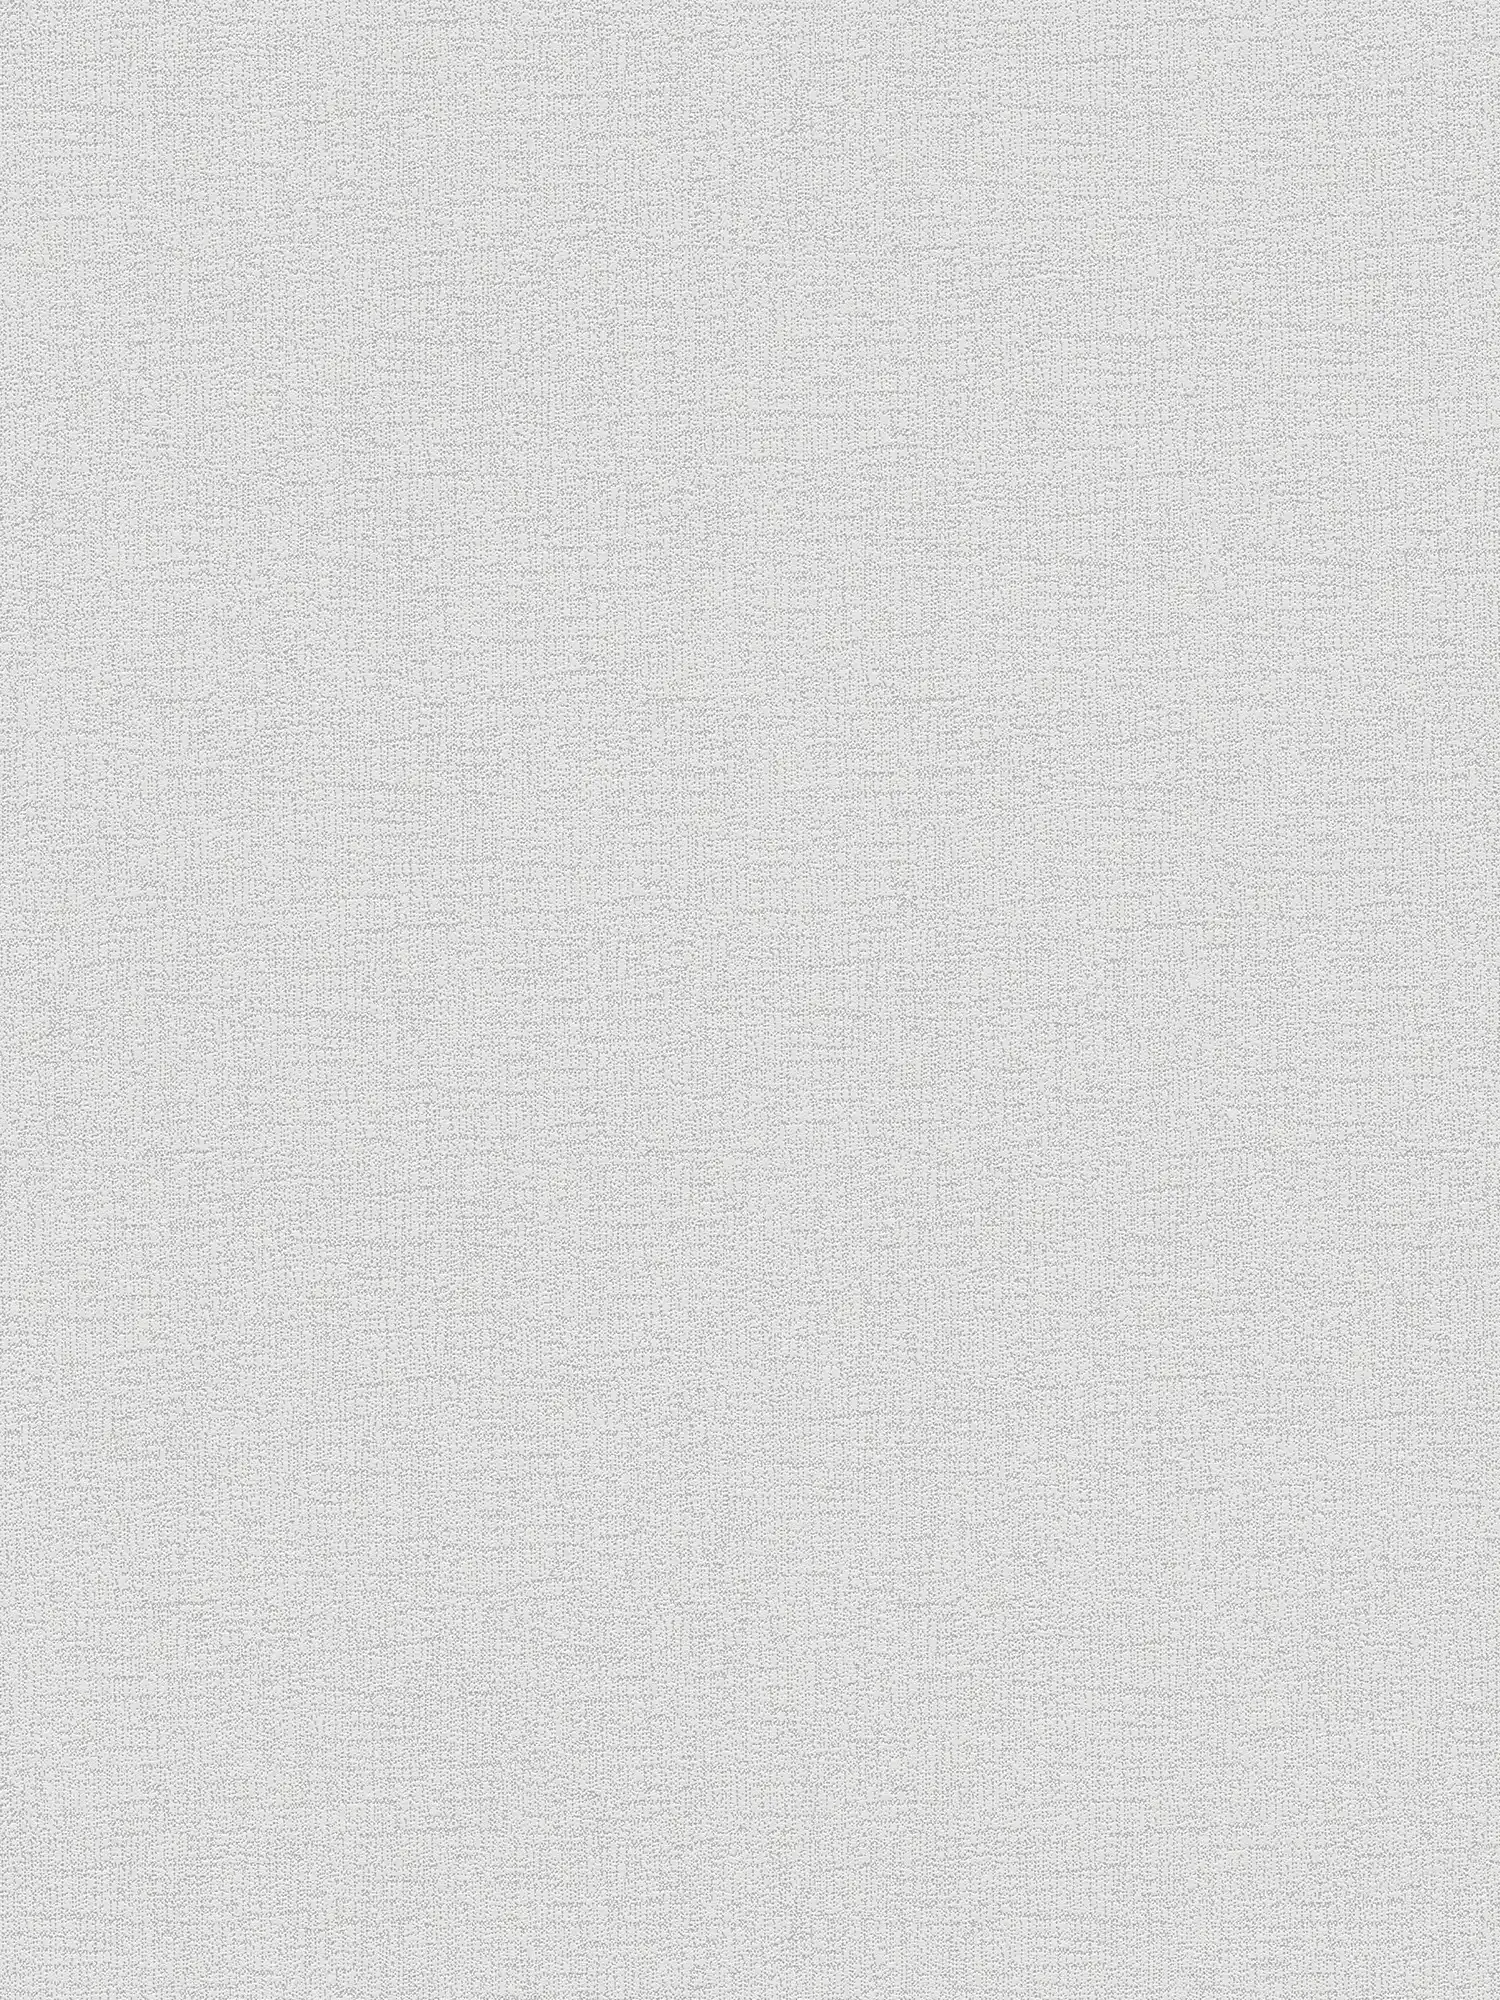 Effen vliesbehang neutraal grijs met textuurpatroon - grijs
